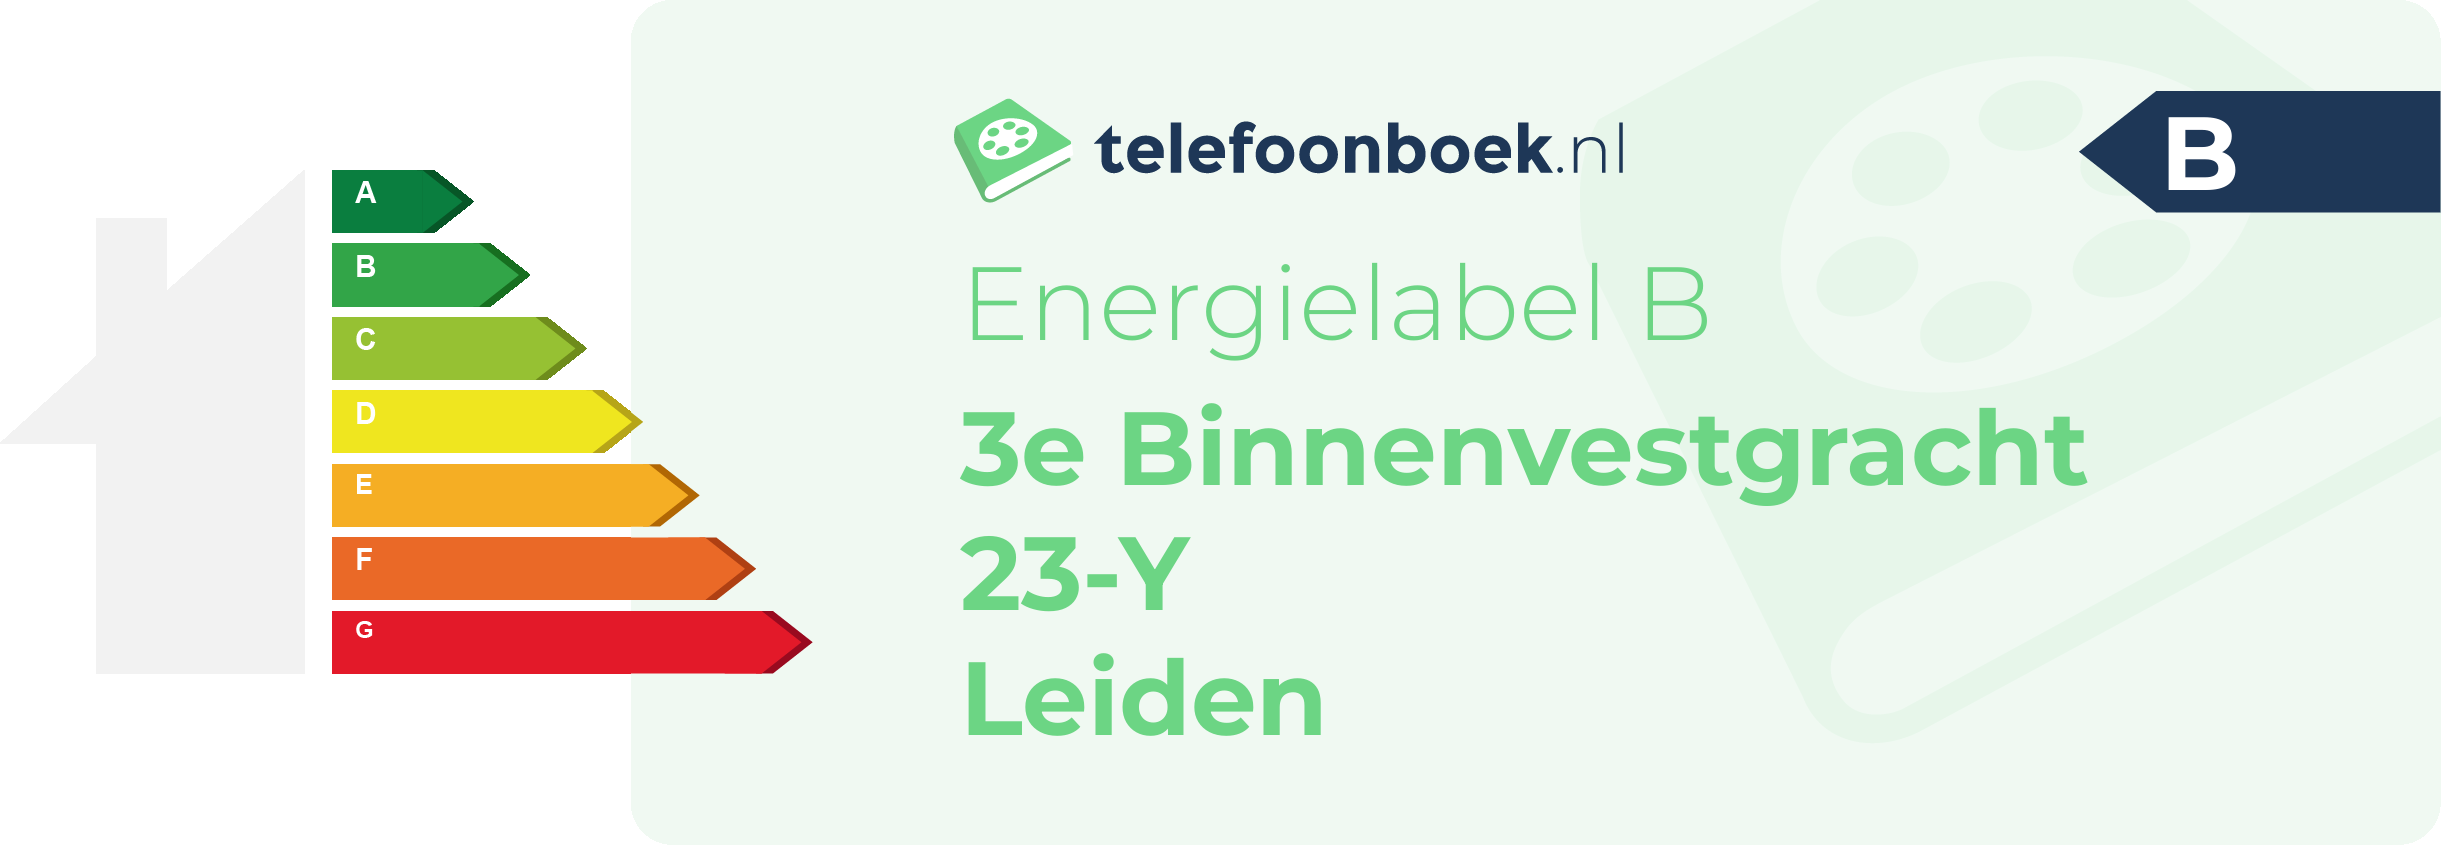 Energielabel 3e Binnenvestgracht 23-Y Leiden